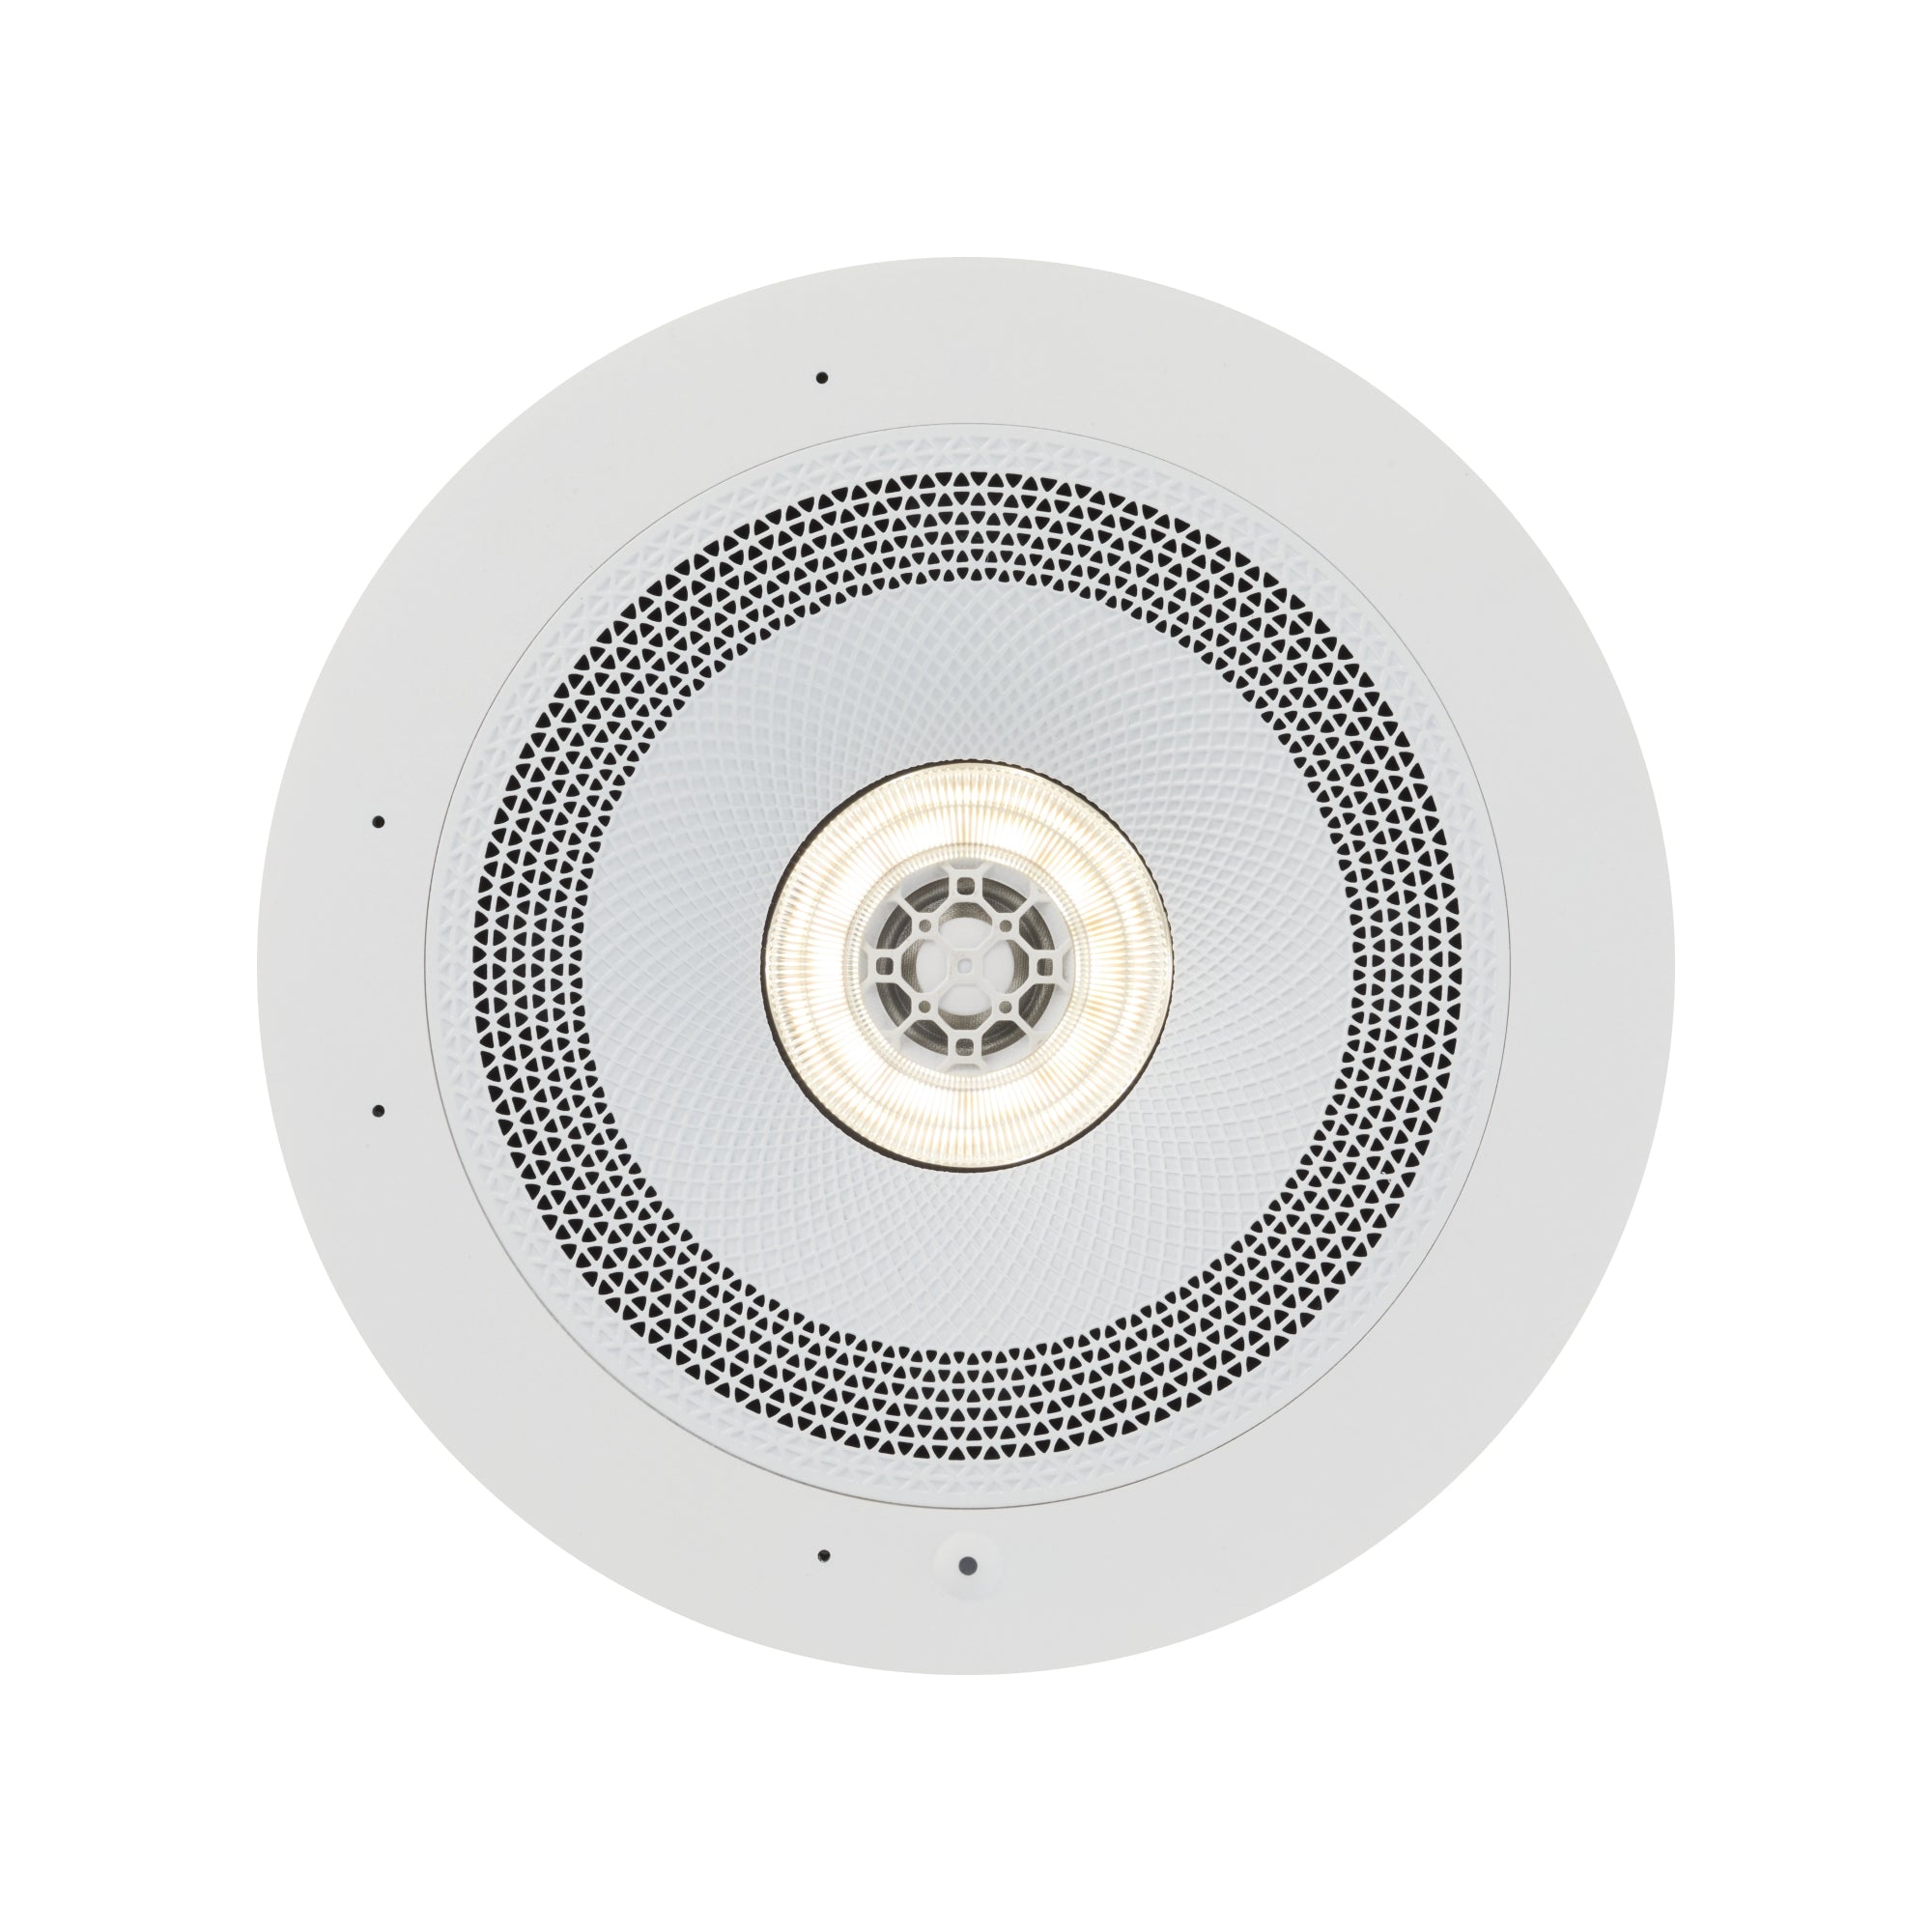 An image of a Zuma - Smart Bezel Voice round ceiling light.